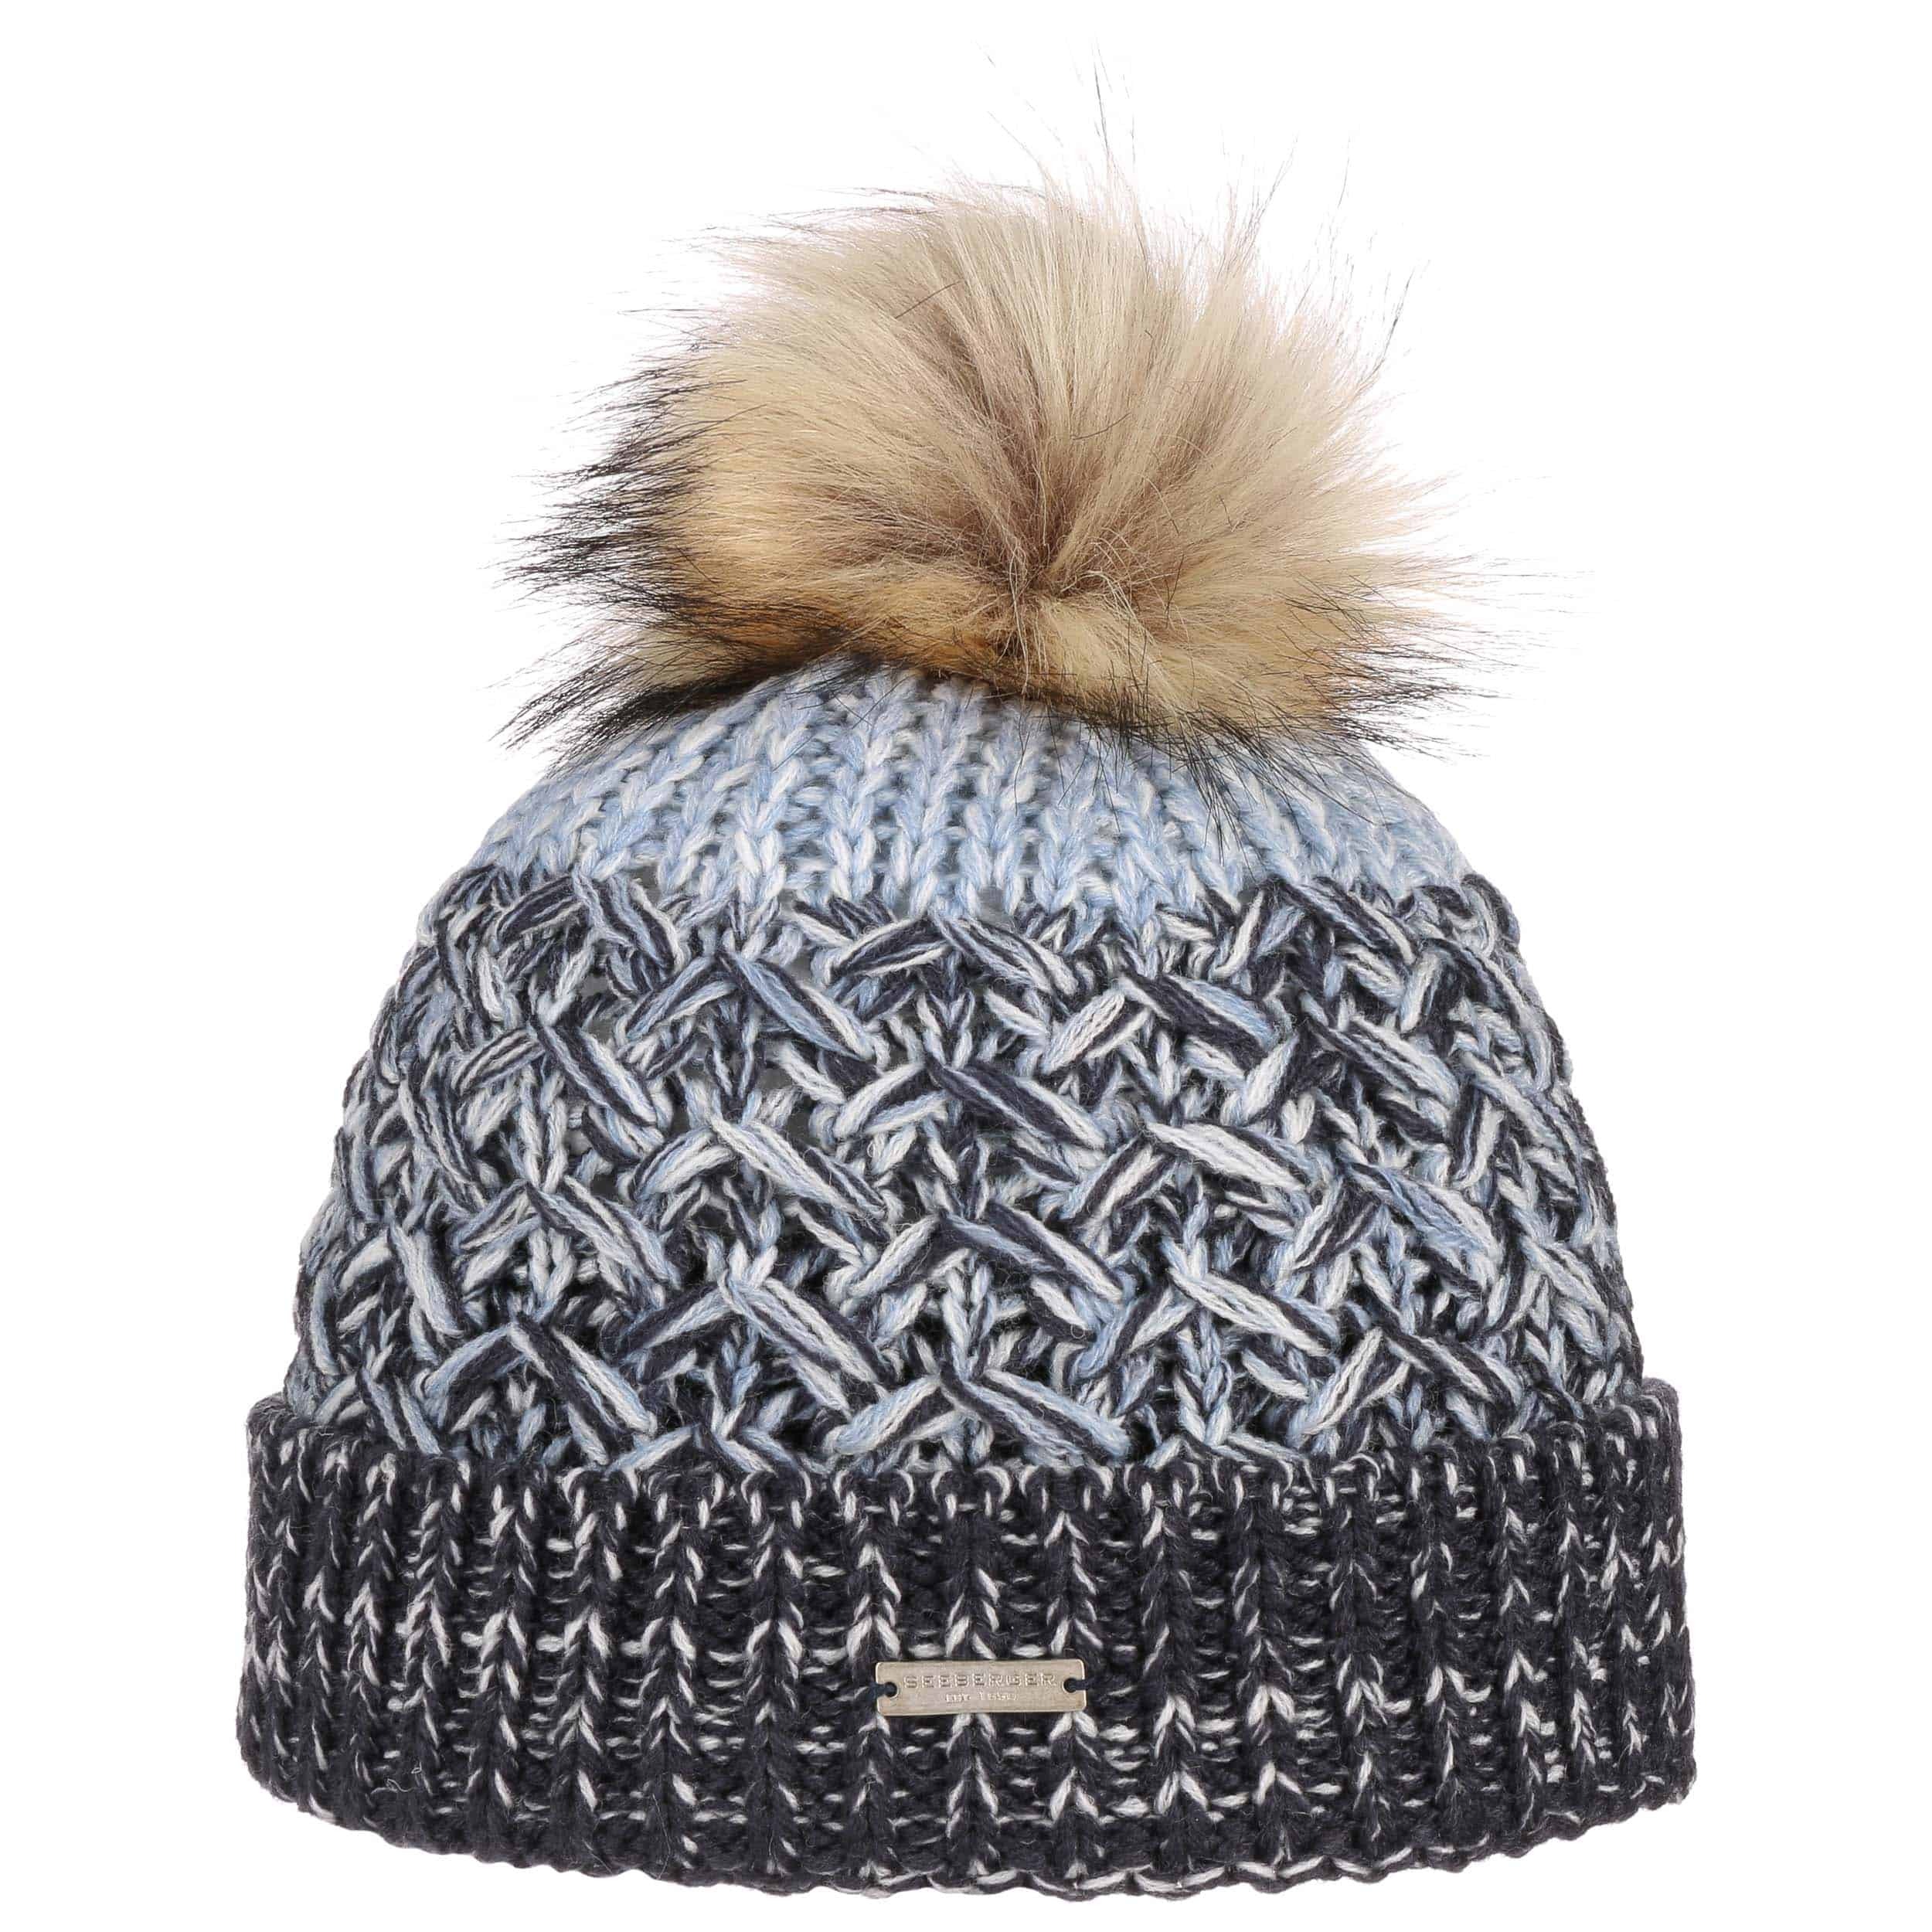 Multimelange Wool Pompom Hat By Seeberger 42 95